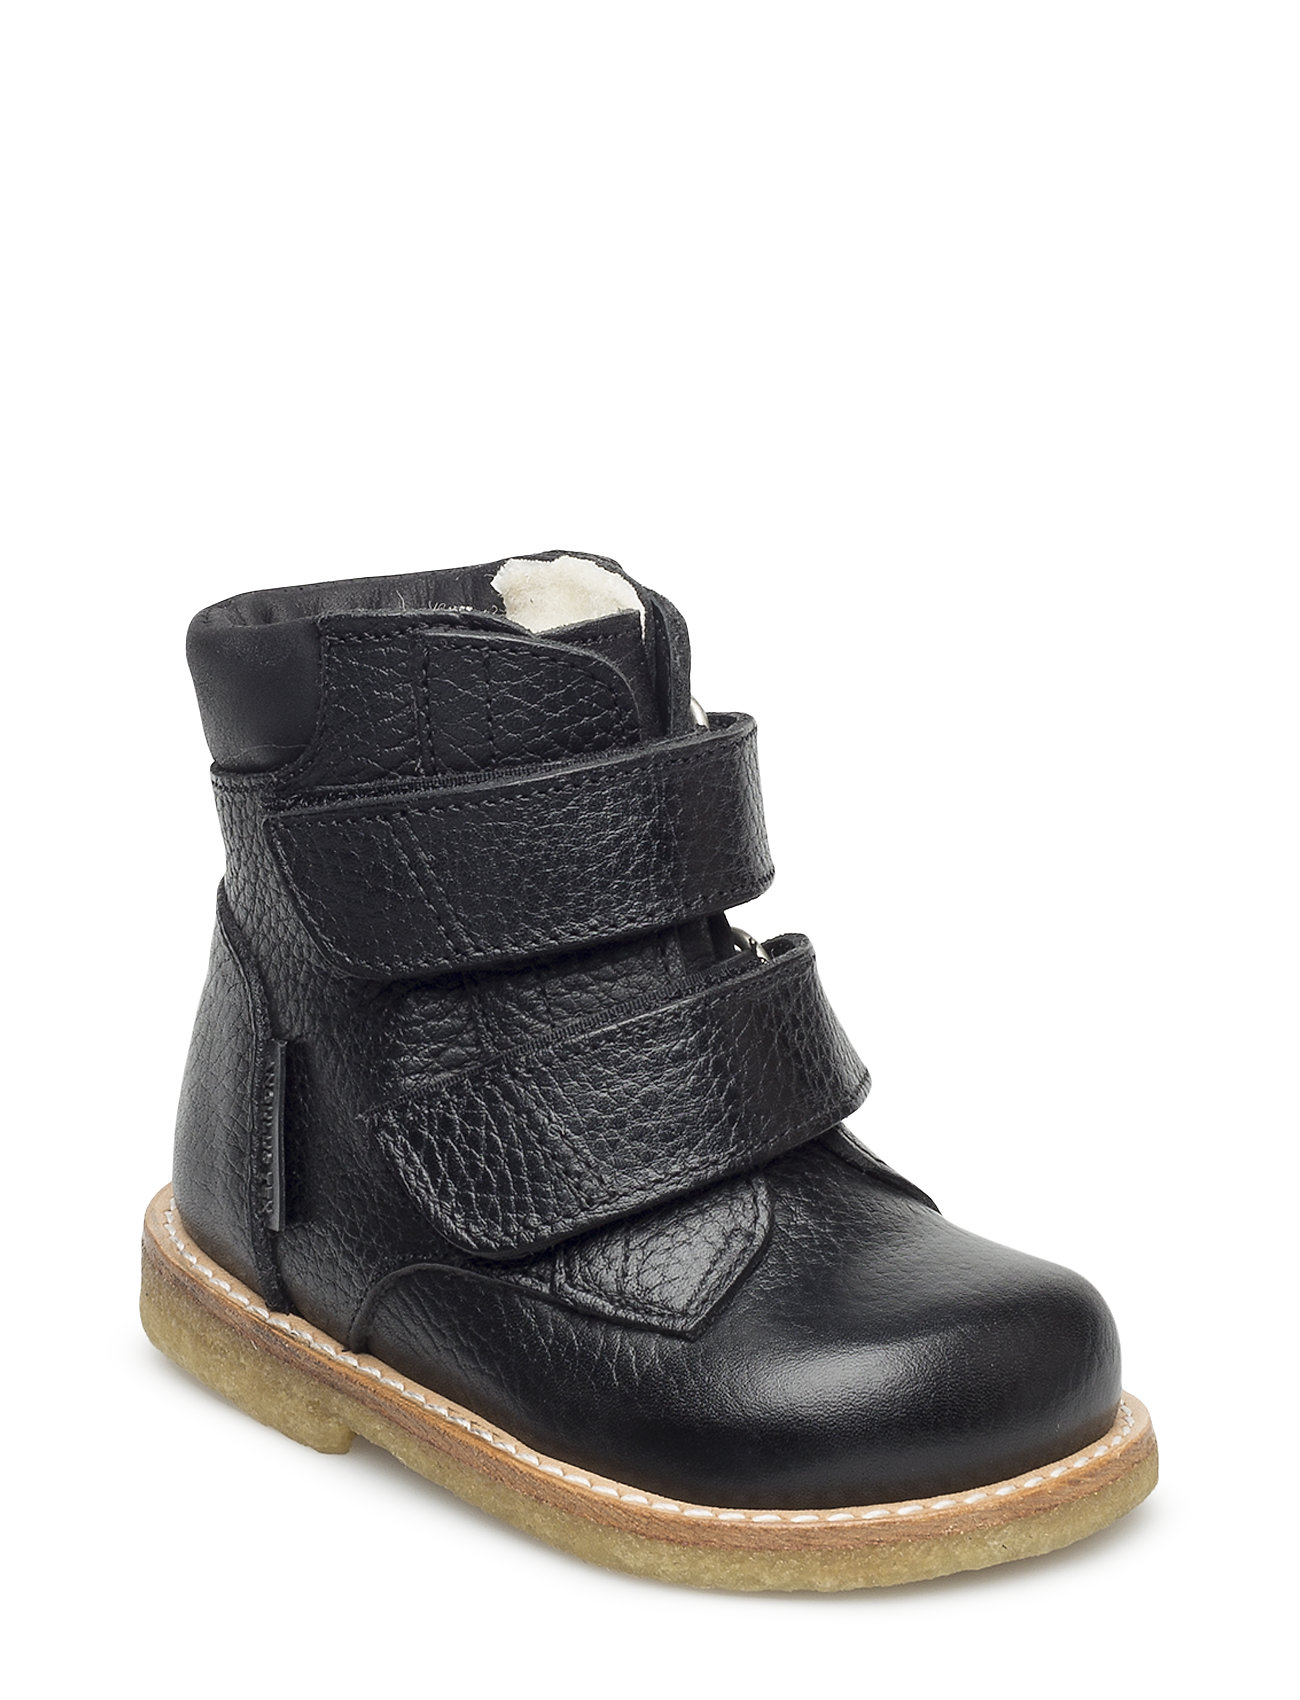 ANGULUS vinterstøvler – Boots - Flat - With Velcro Vinterstøvler Med Burrebånd Sort ANGULUS børn i Lilla Pashion.dk